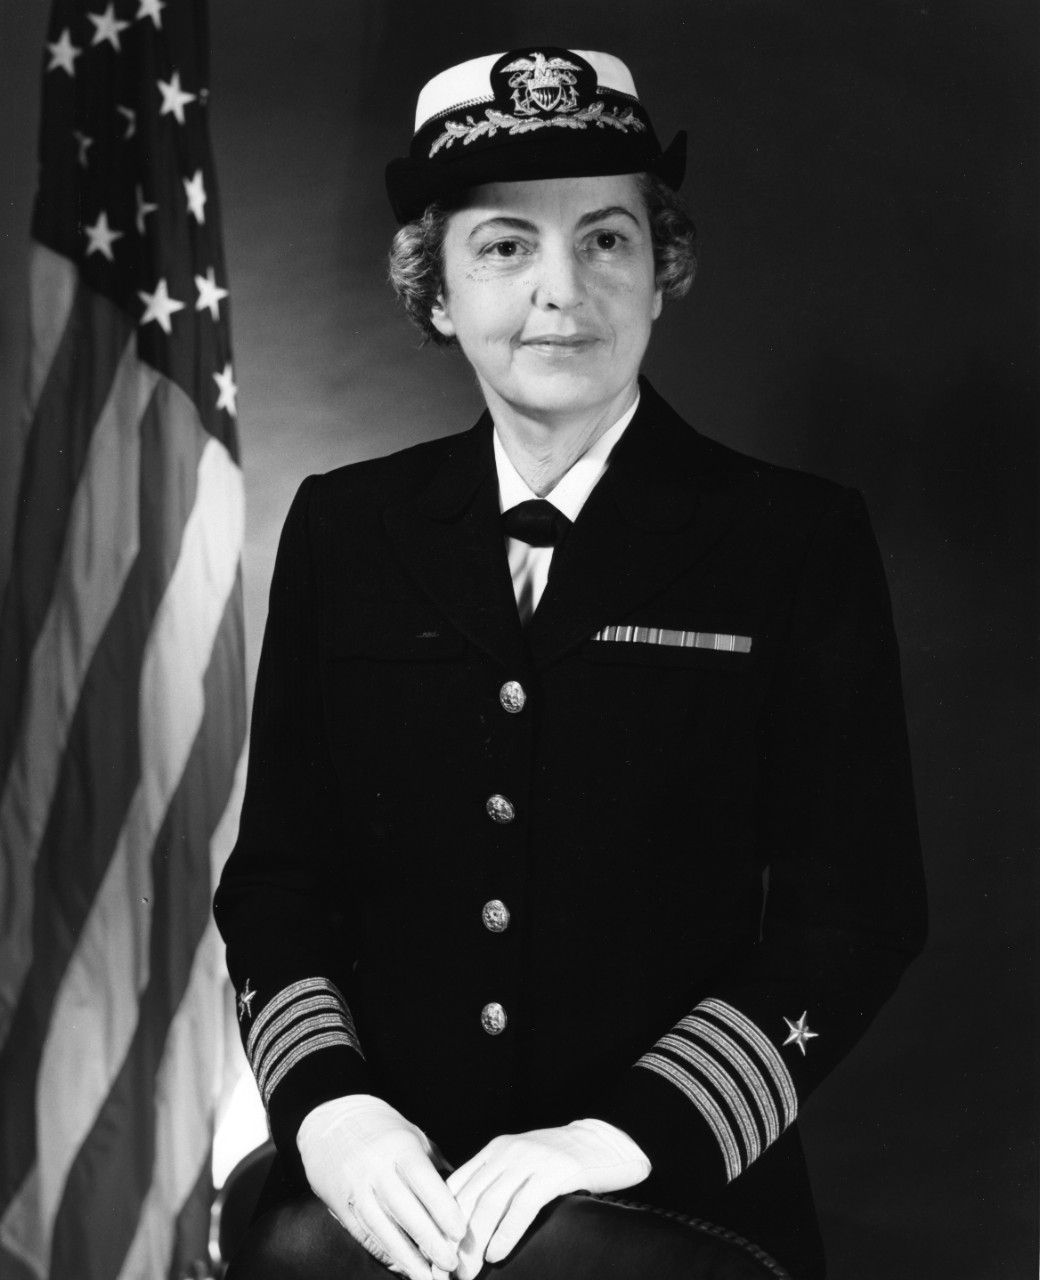 Captain Rita Lenihan